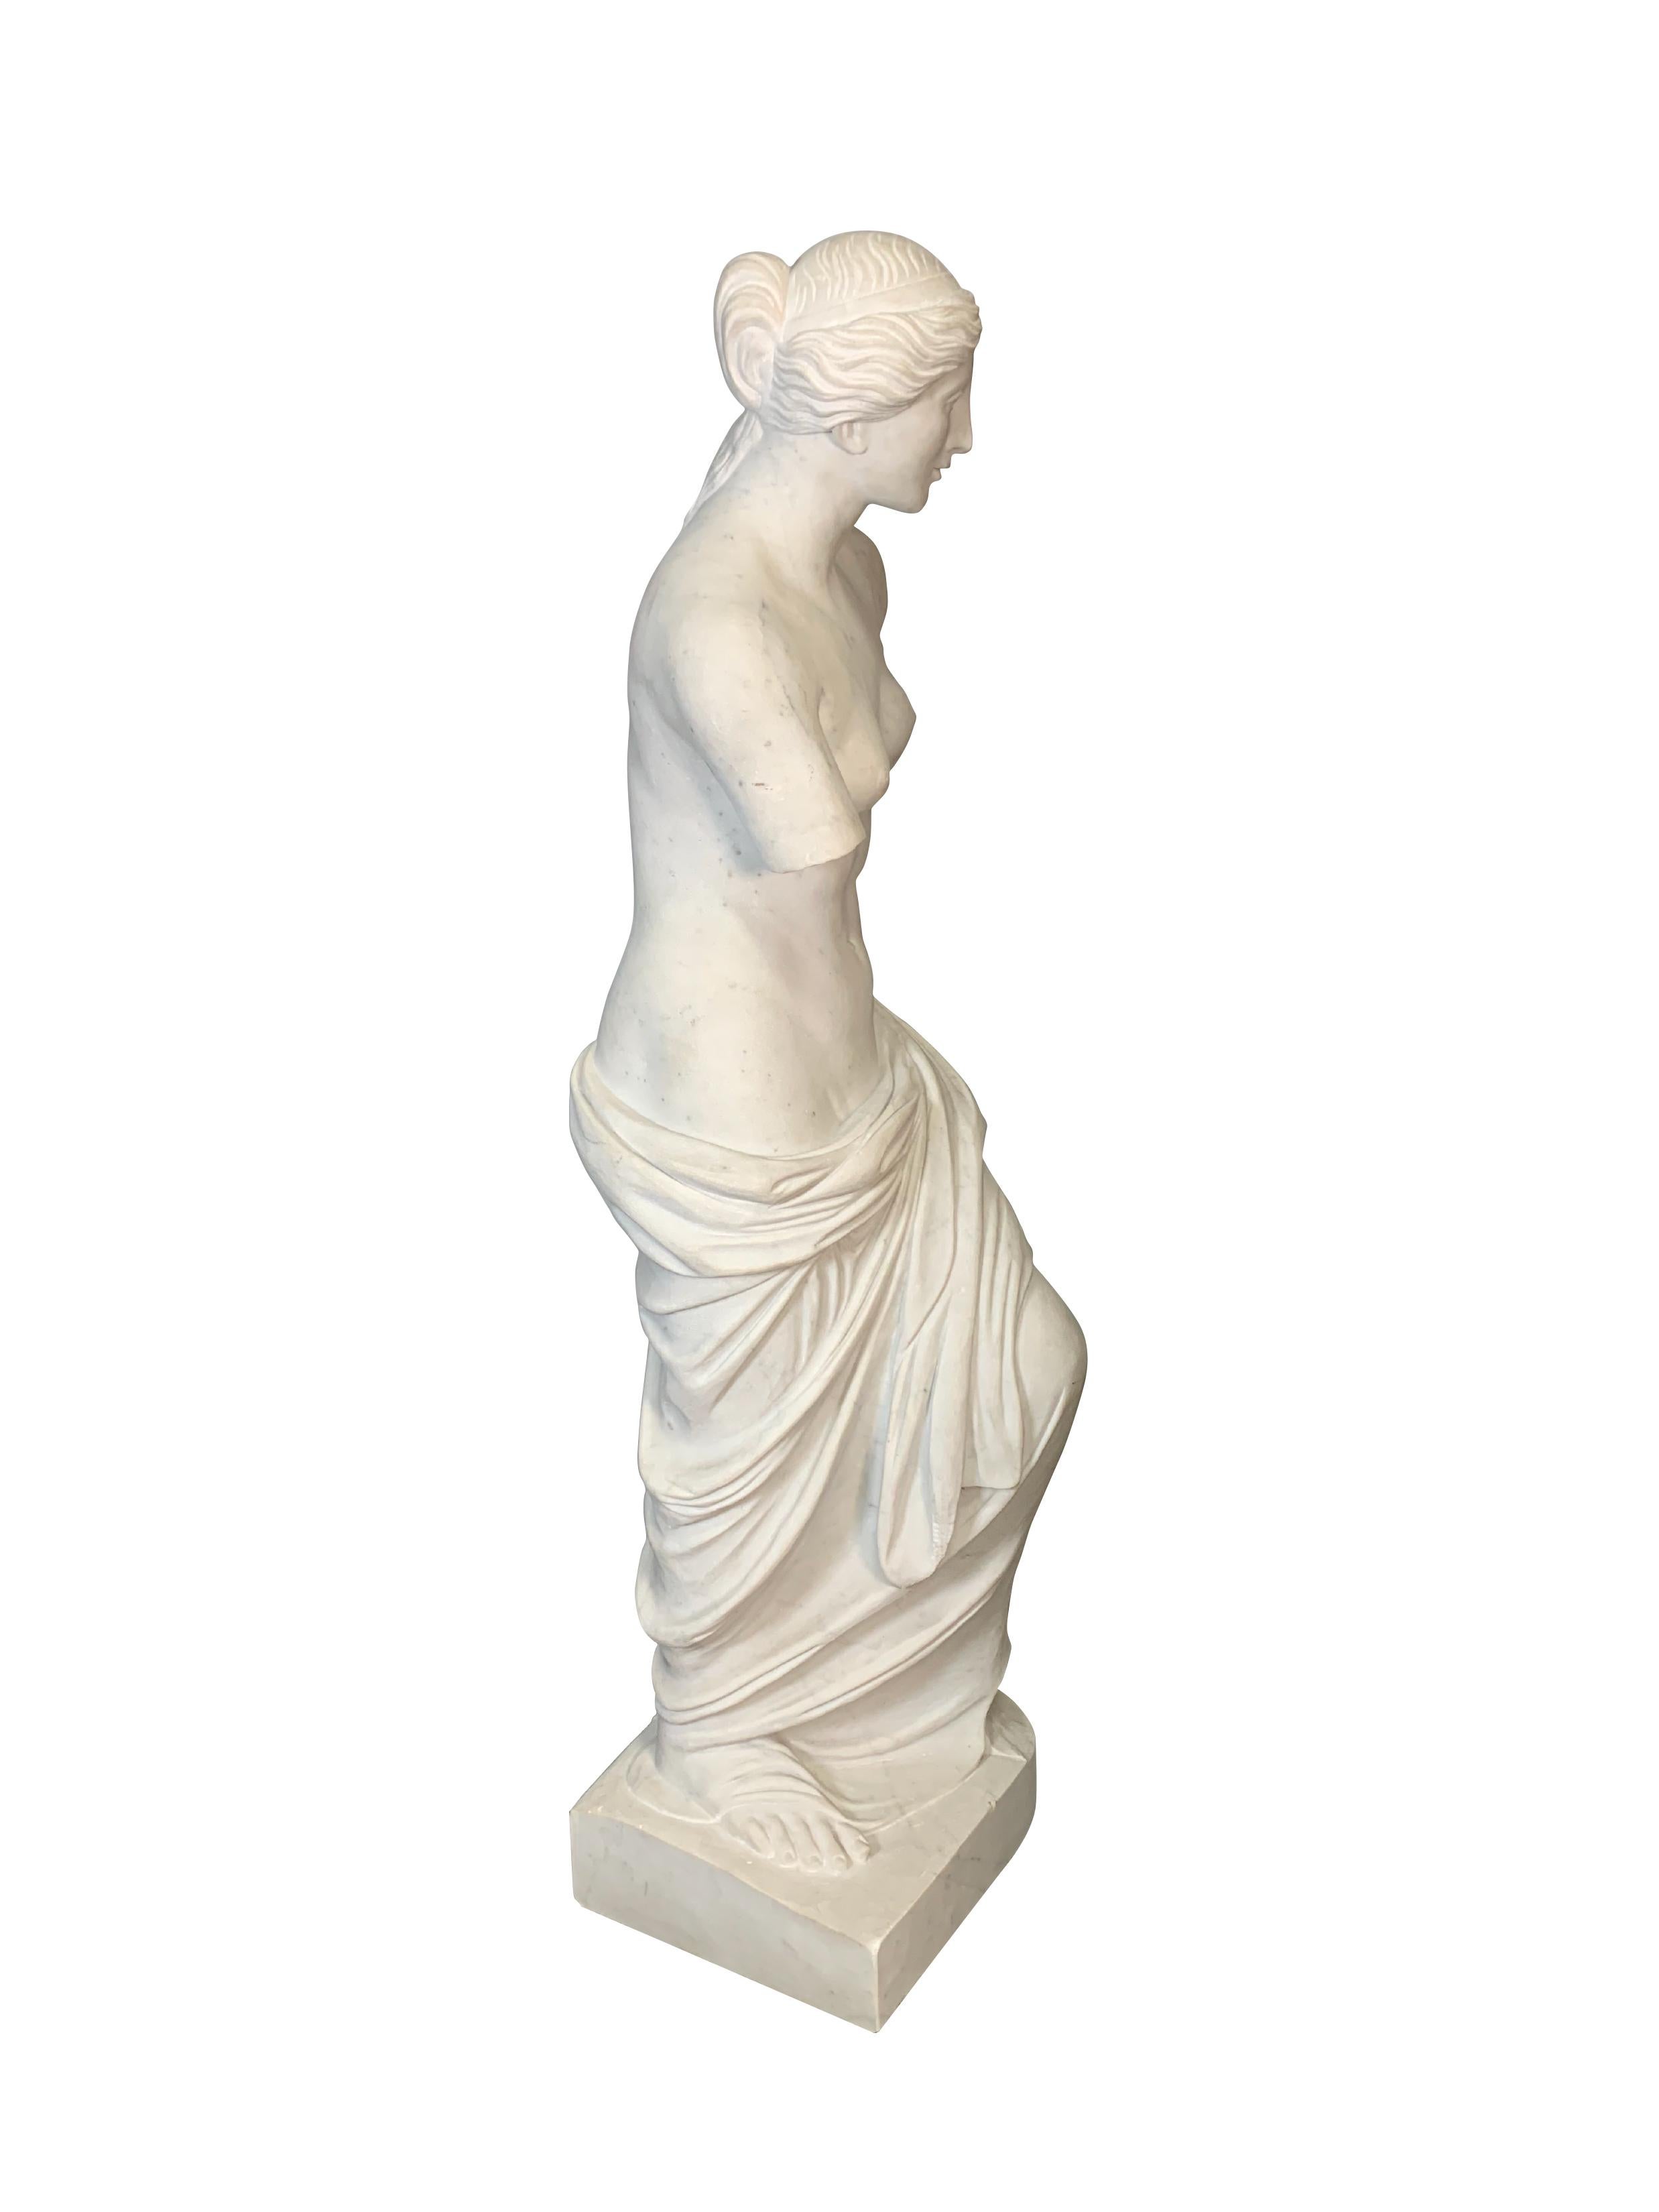 Cette élégante figure italienne en marbre sculptée à la main a été réalisée au début du XXe siècle. Elle est une copie de la célèbre sculpture en marbre Vénus de Milo (Aphoride de Milo en grec), déesse de l'amour et de la beauté. La statue originale